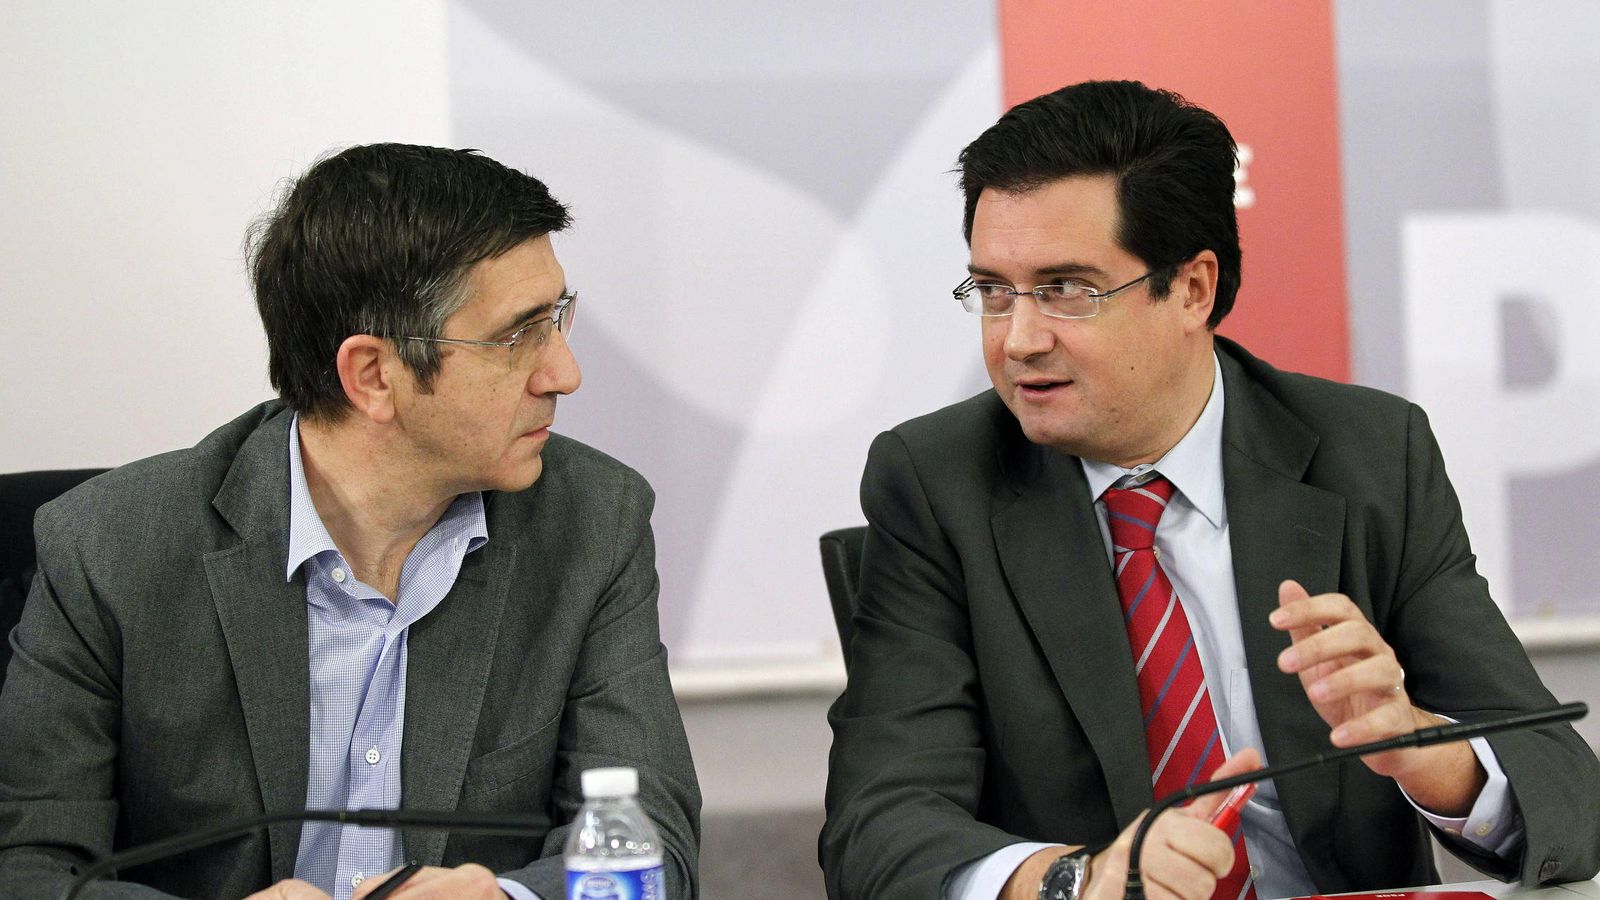 Foto: Patxi López y Óscar López conversan durante una reunión de la ejecutiva de Alfredo Pérez Rubalcaba, en enero de 2013 en Ferraz. (EFE)